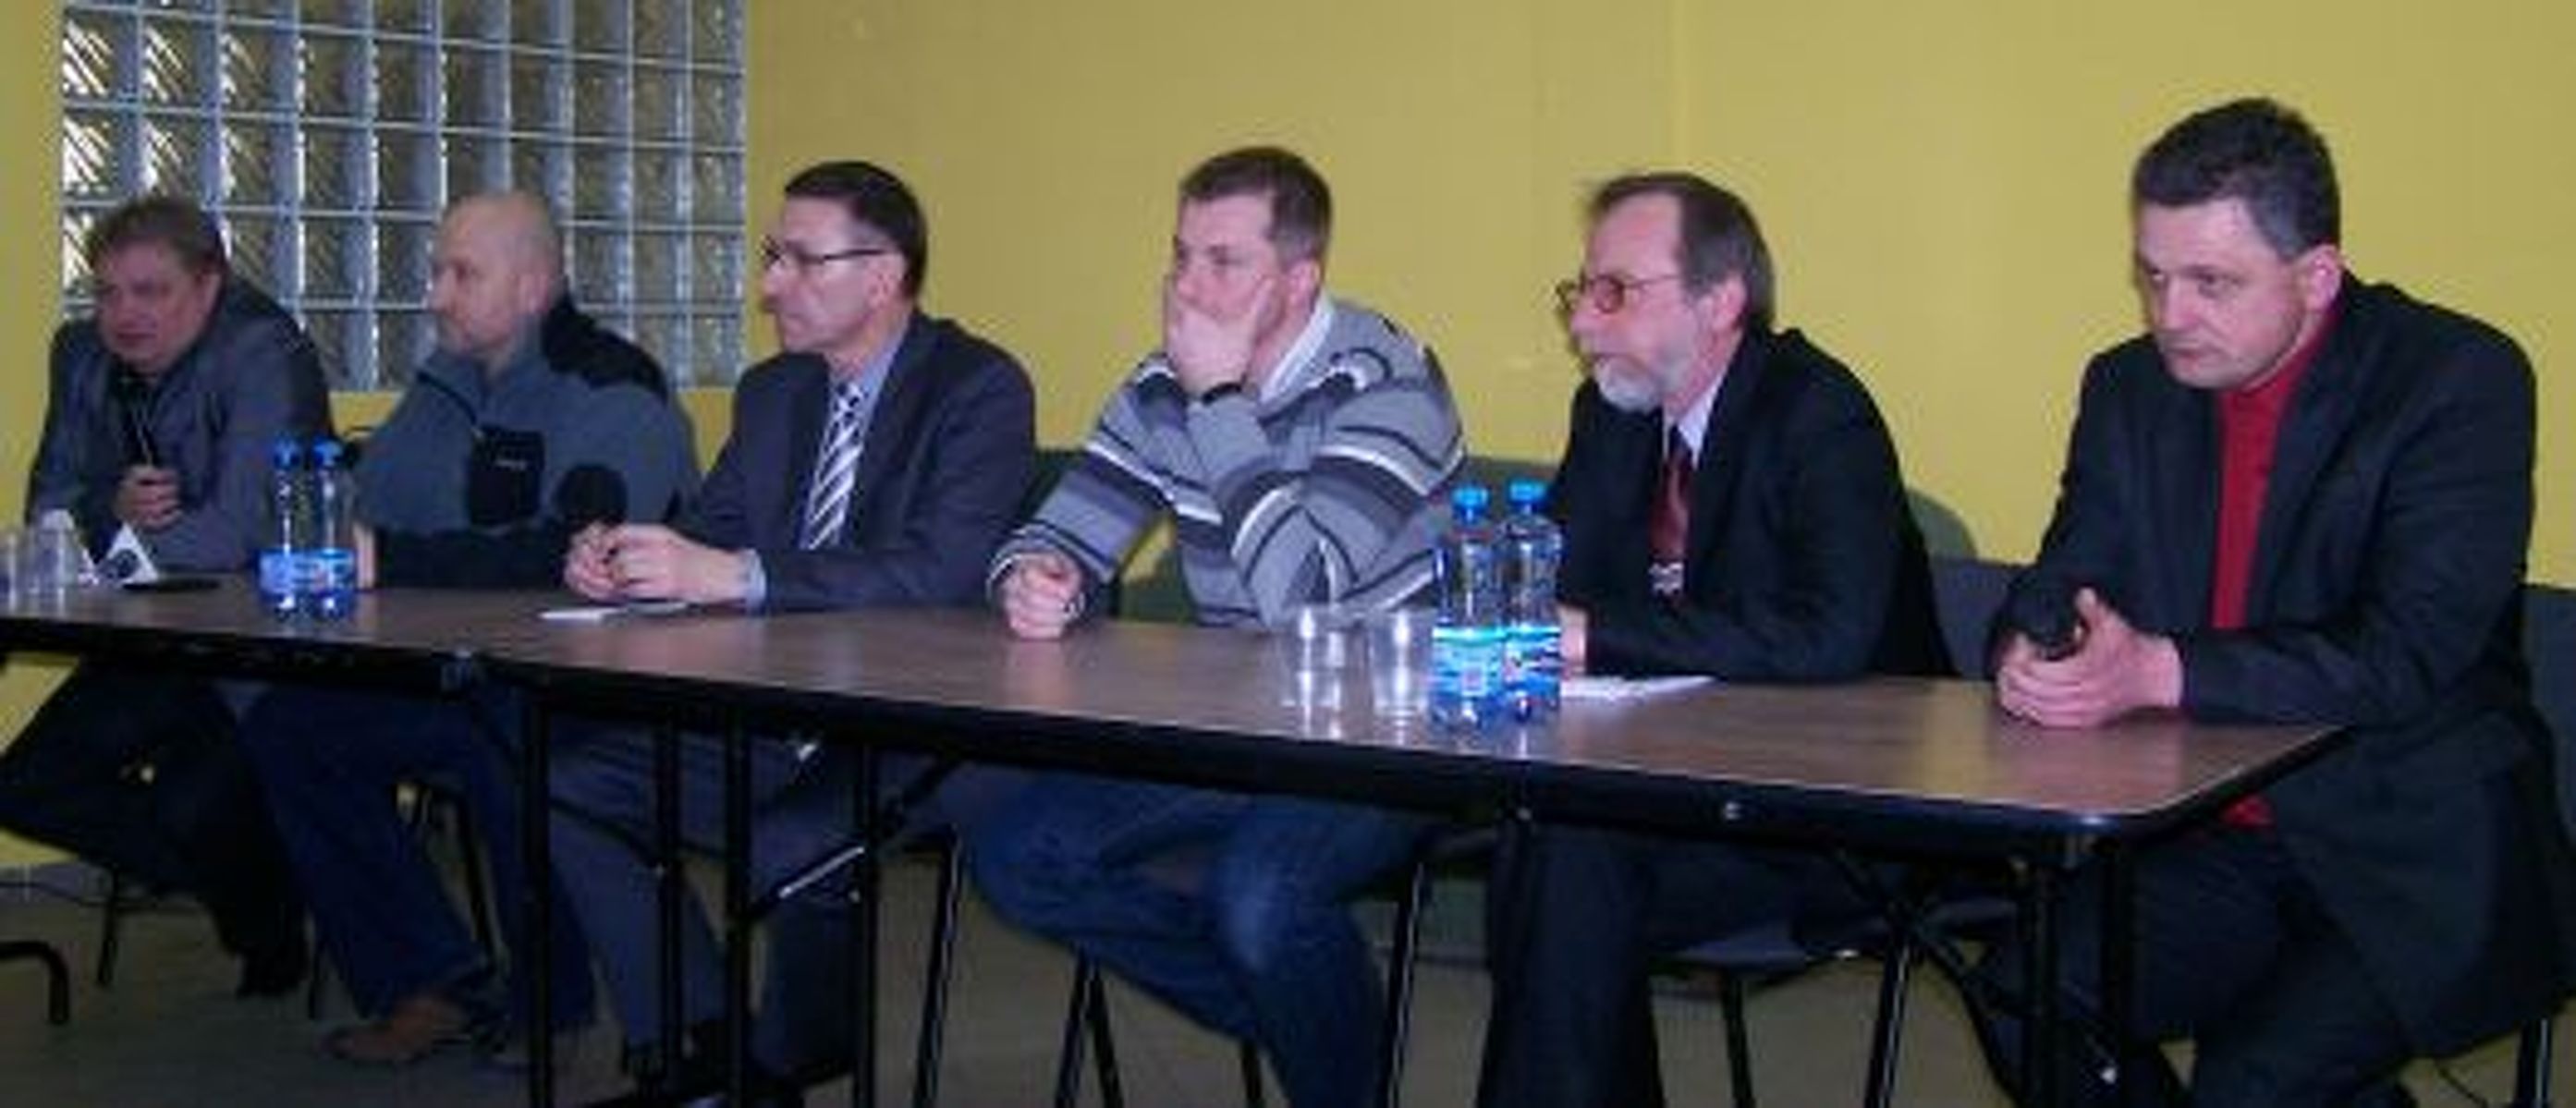 Od lewej: Andrzej Bogusz (prezes OKS 1945), Jan Tandyrak (przewodniczący Rady Miasta), Piotr Grzymowicz (prezydent miasta), Marcin Kuchciński (przewodniczący miejskiej Komisji Sportu i Rekreacji), Marian Świniarski (wiceprezes klubu), Andrzej Królikowski 